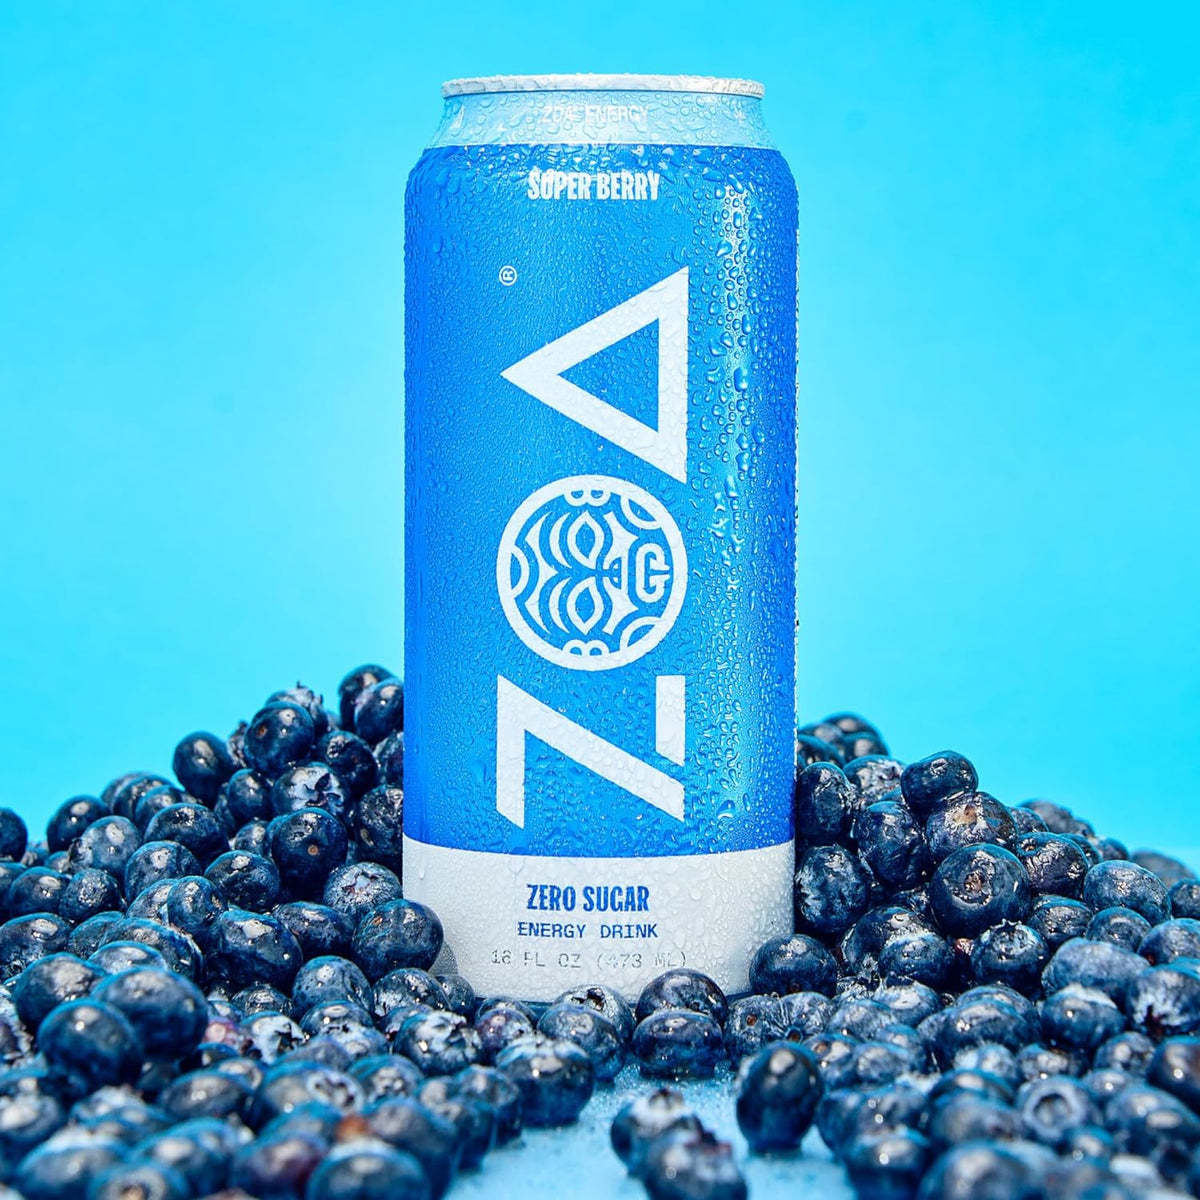 ZOA Energy (473ml cans)